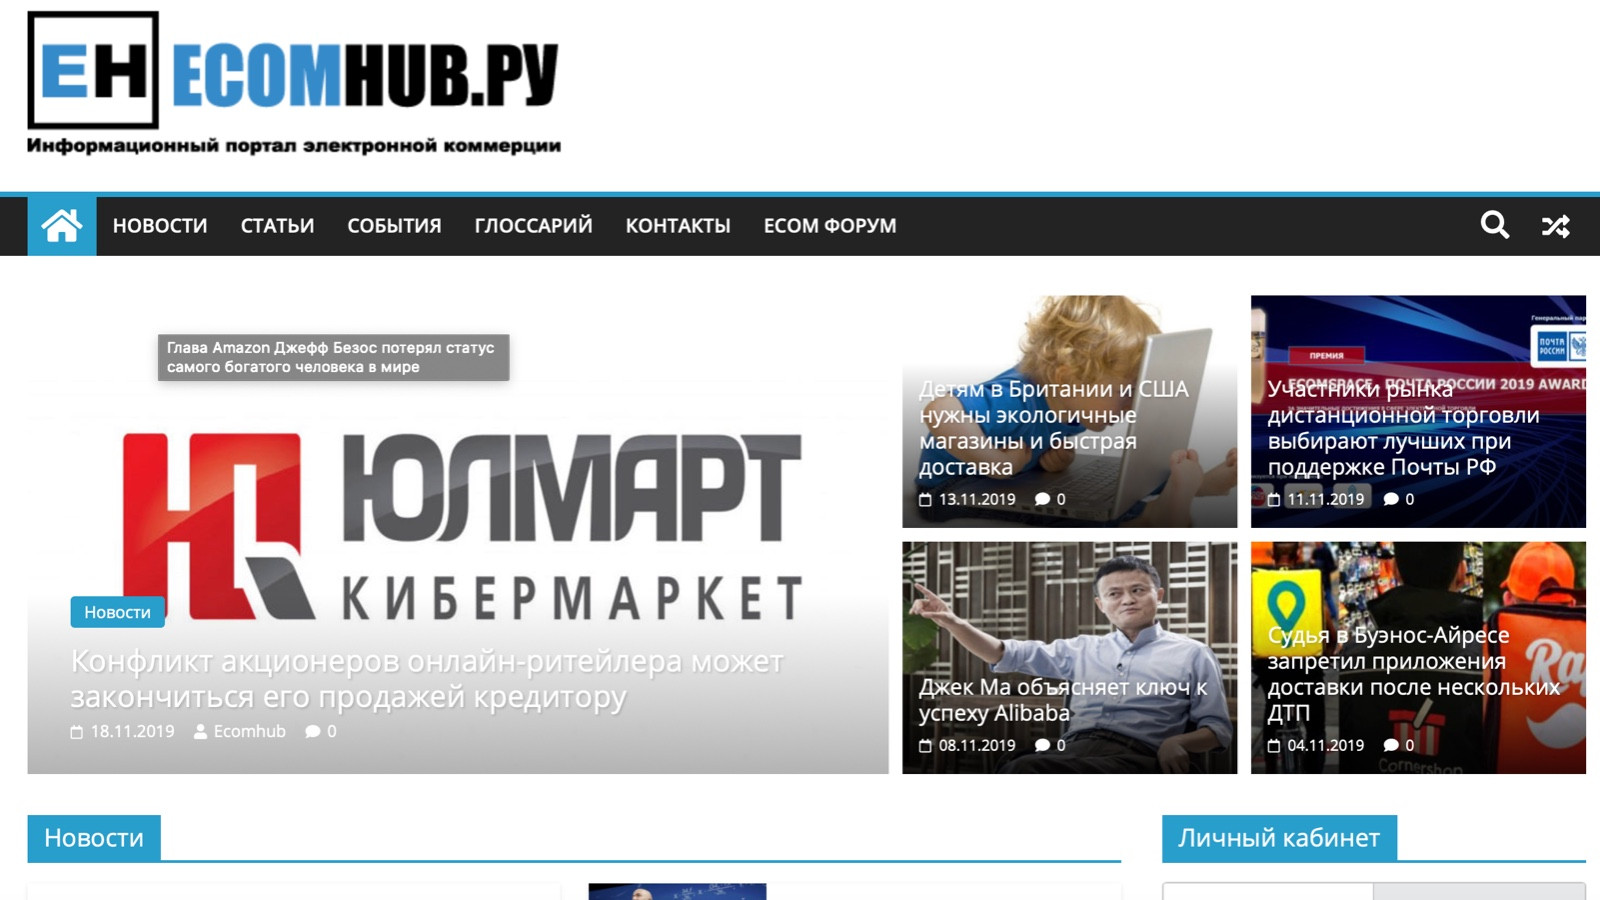 EcomHub.ru - новый интересный сайт о E-commerce